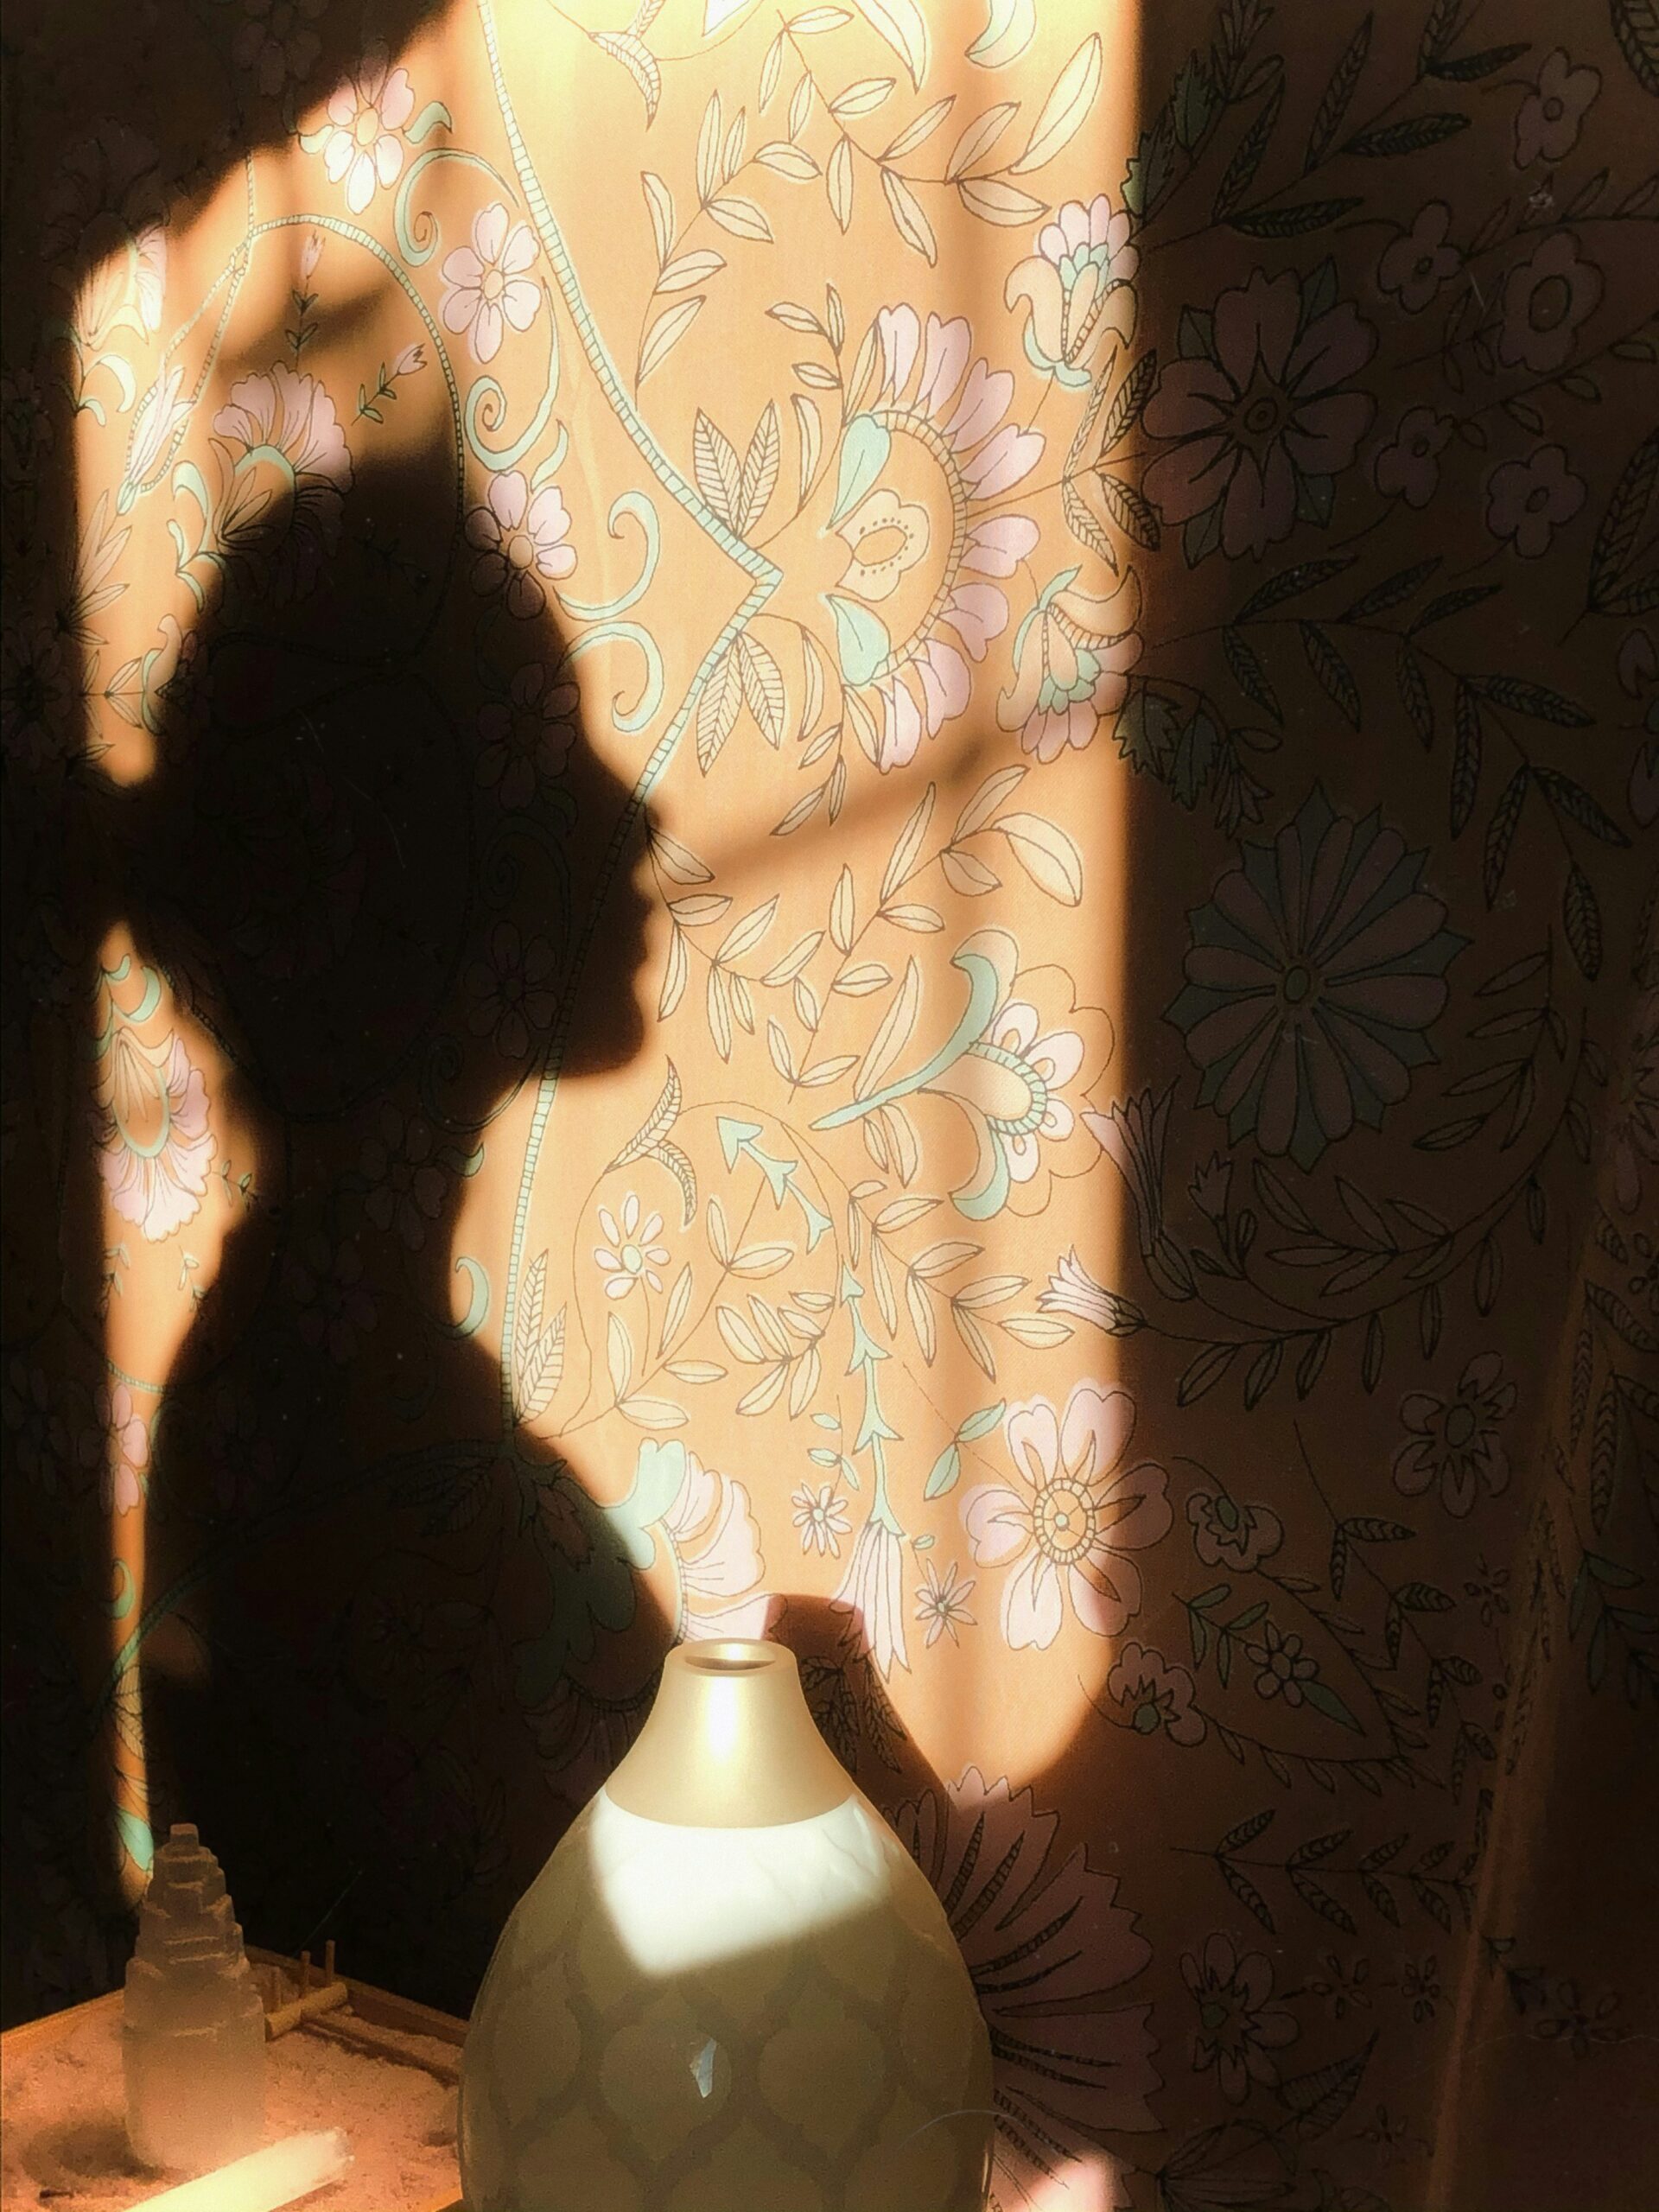 Der Schatten einer Frau auf einem gelb geblümten Vorhang.